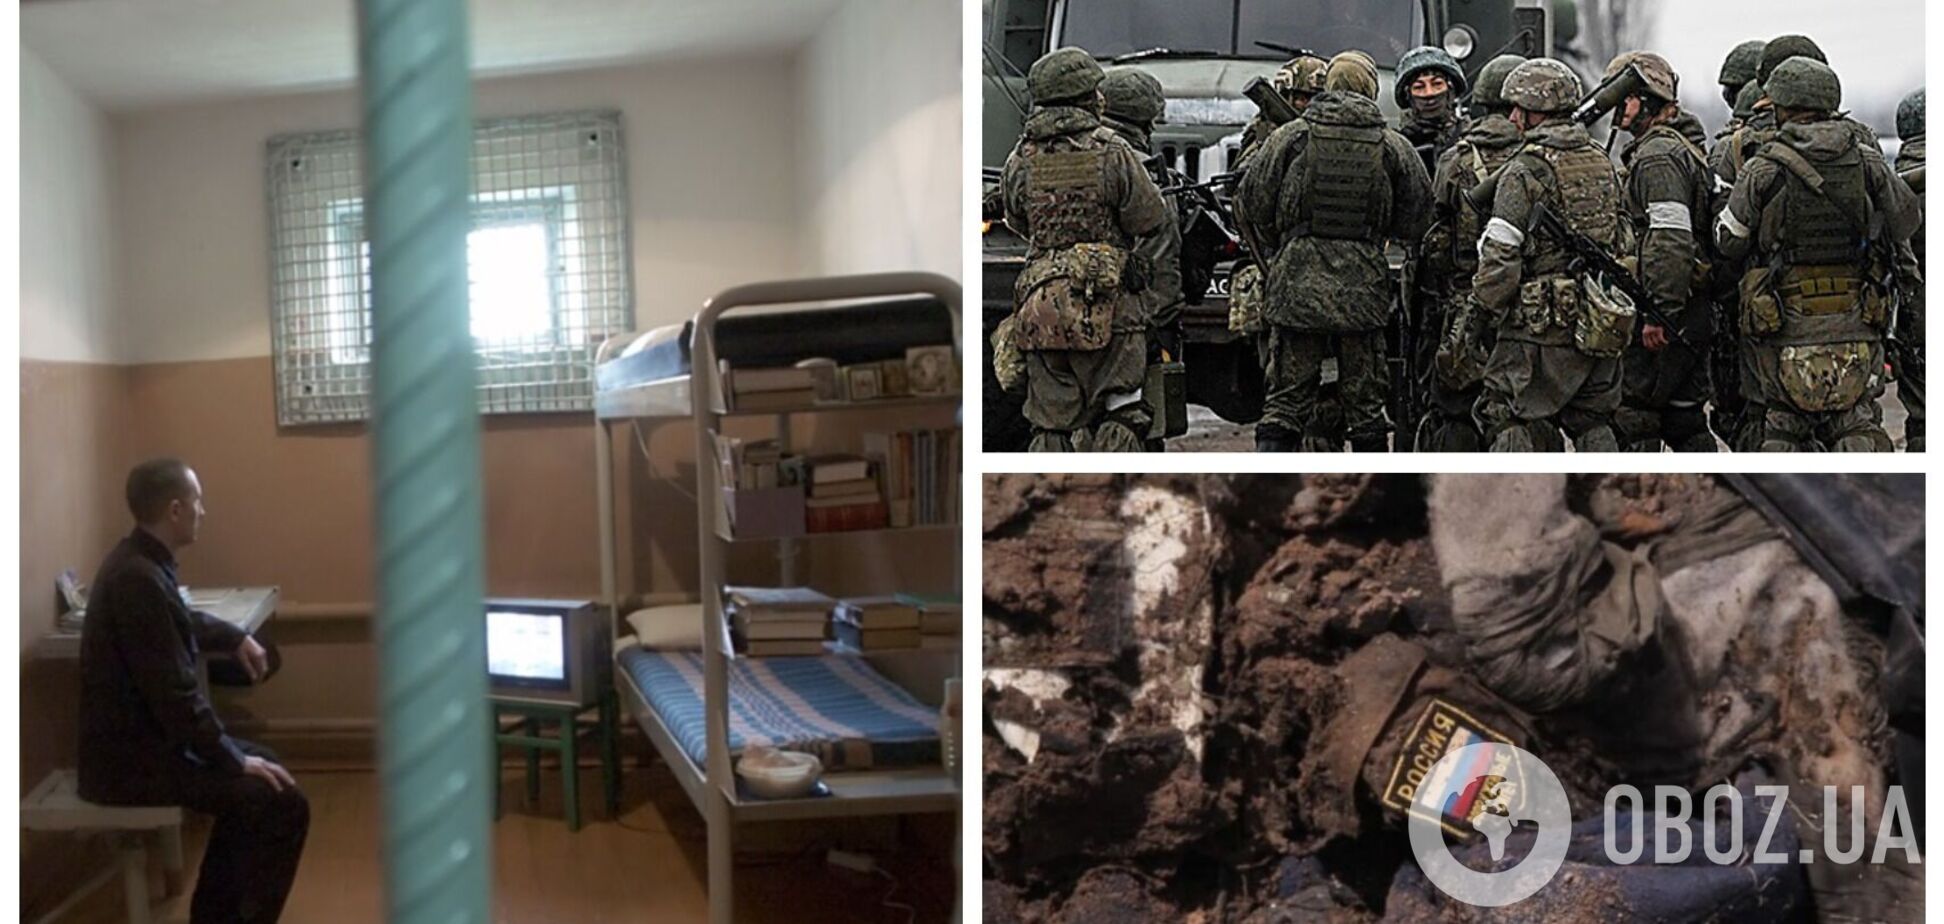 Мародерство поощряется: BILD узнал новые детали вербовки заключенных в РФ на войну против Украины